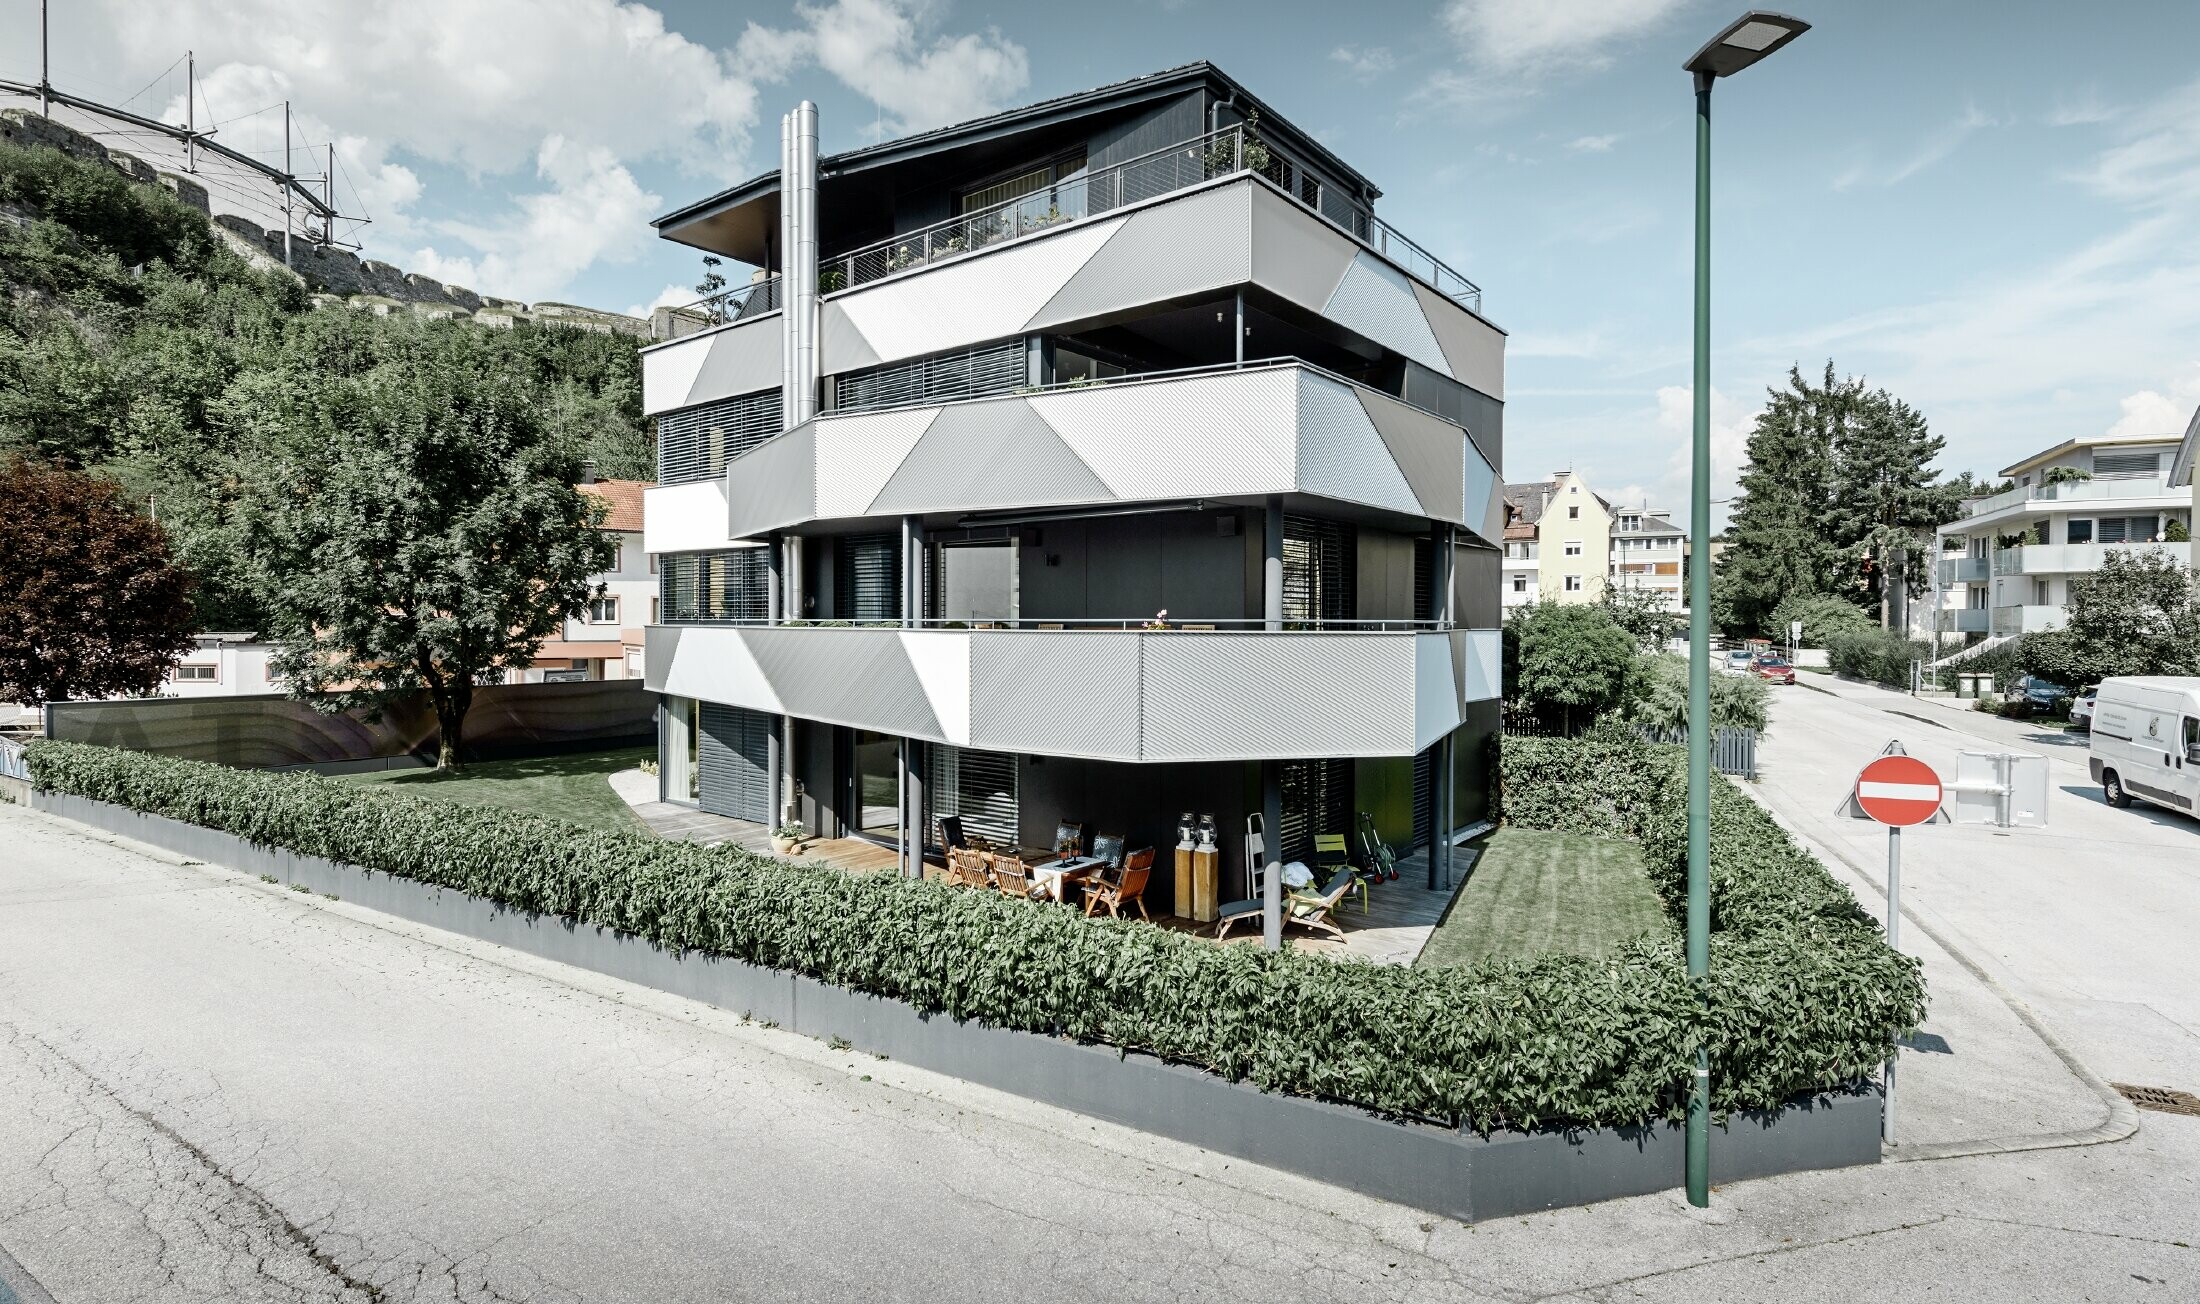 Boční pohled na bytový dům s lisovaným pilovým Zackenprofilem položeným v různých úhlech